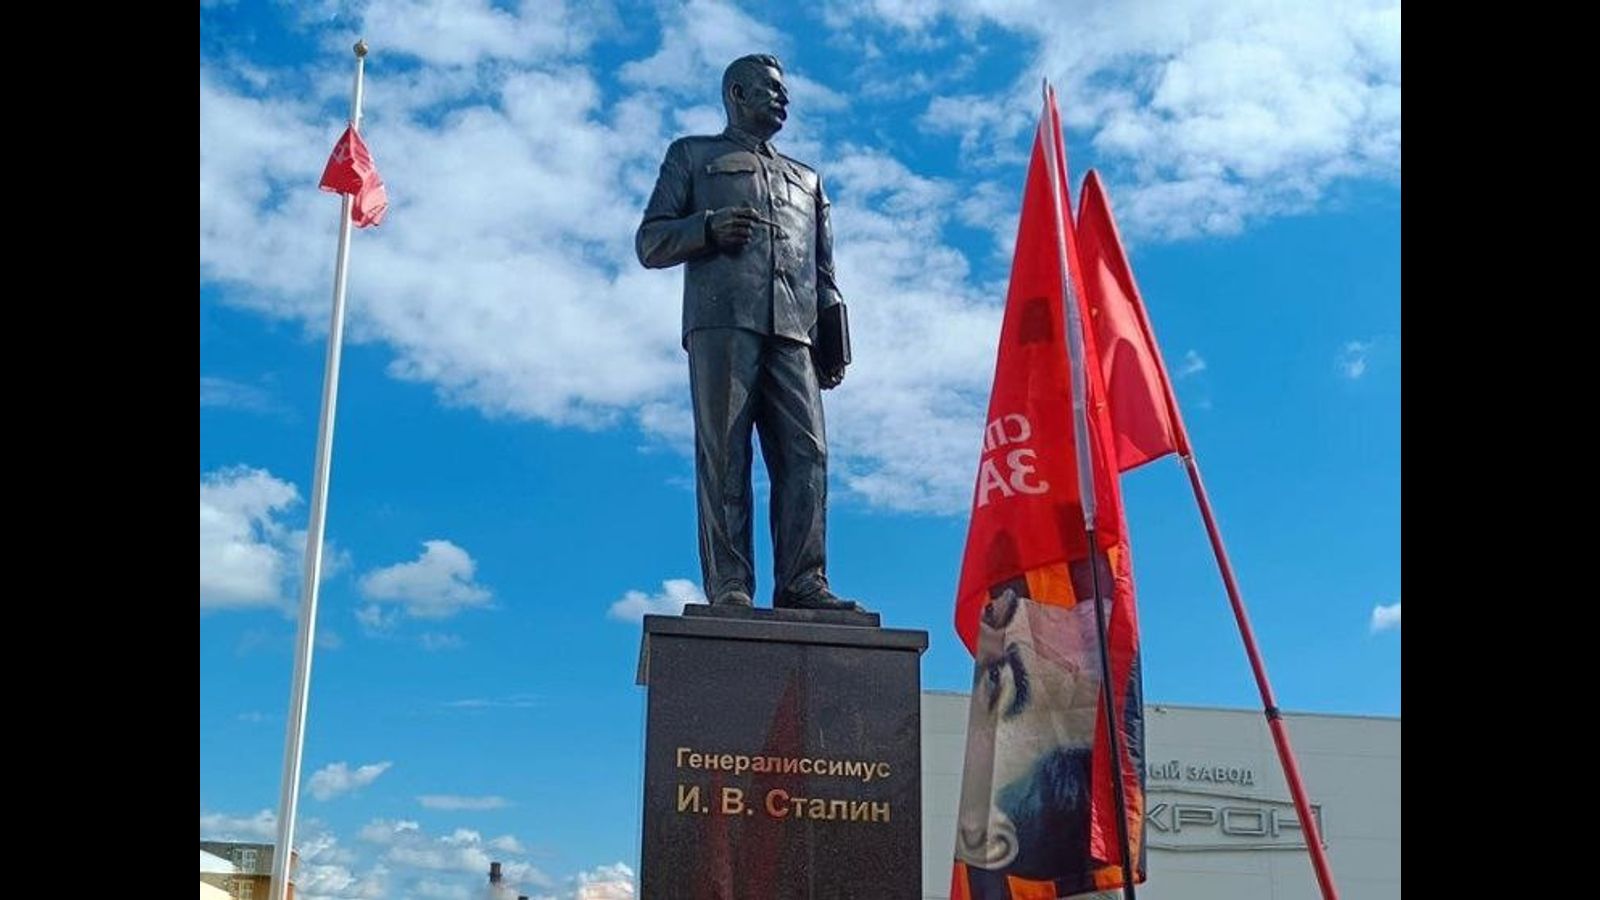 Das Putin-Regime arbeitet an der Rehabilitierung Josef Stalins, während Denkmäler für Opfer des Terrors zerstört werden